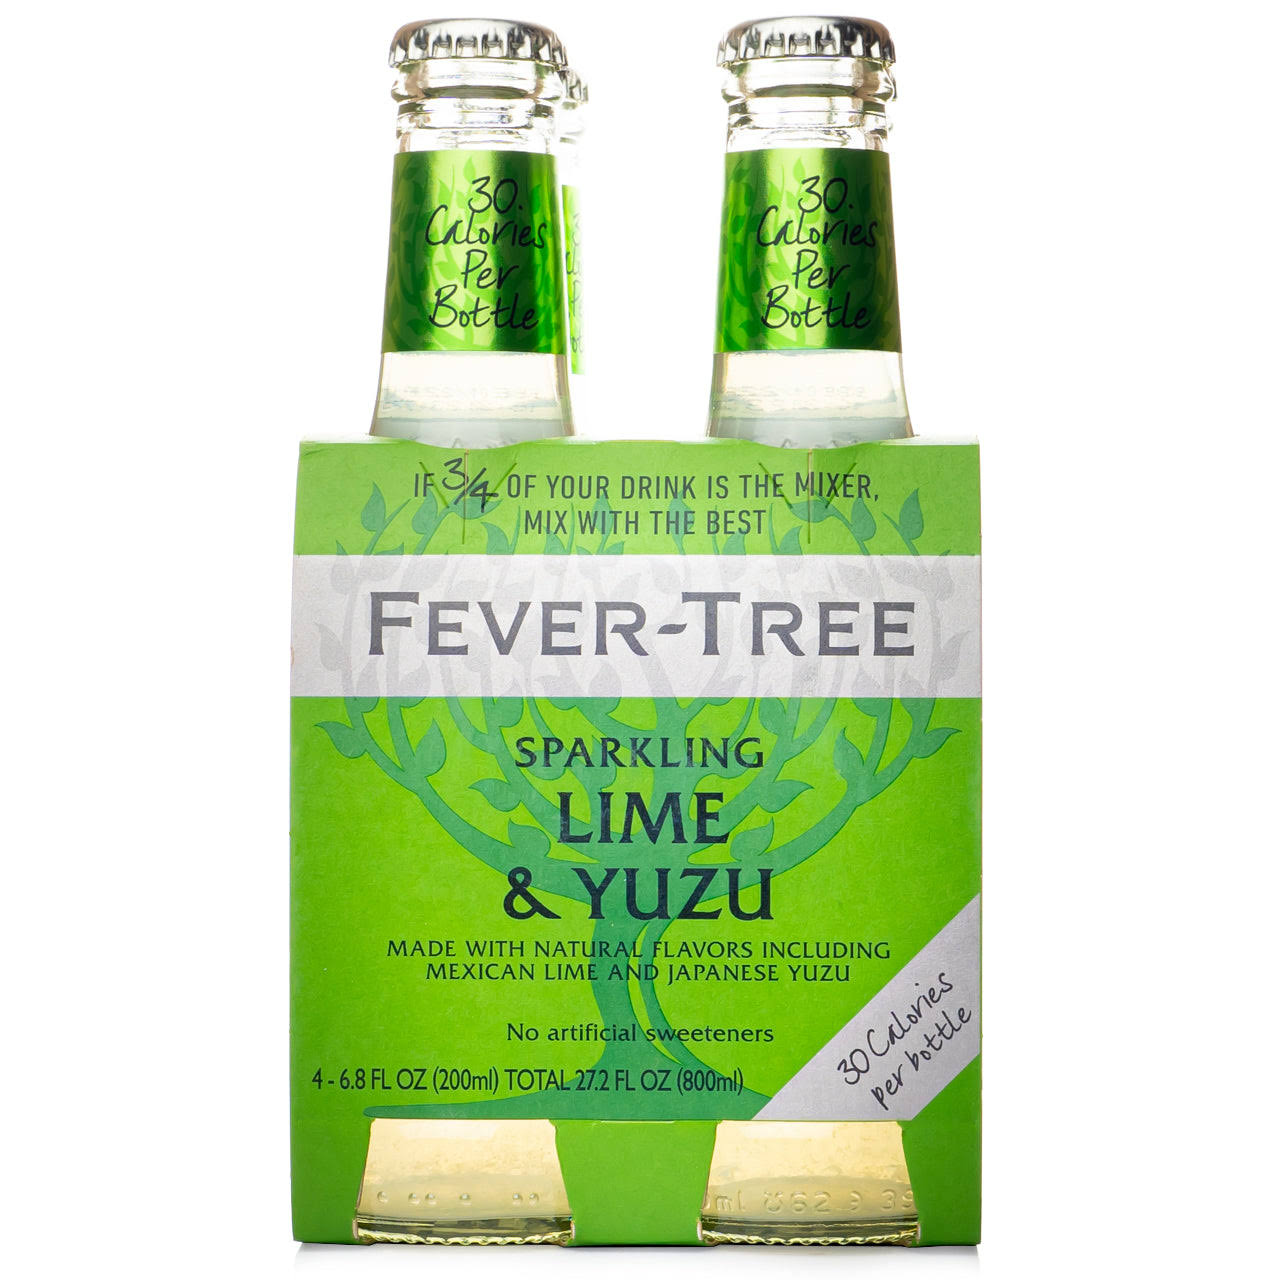 Fever-Tree Sparkling, Lime & Yuzu - 4 pack, 6.8 fl oz bottles